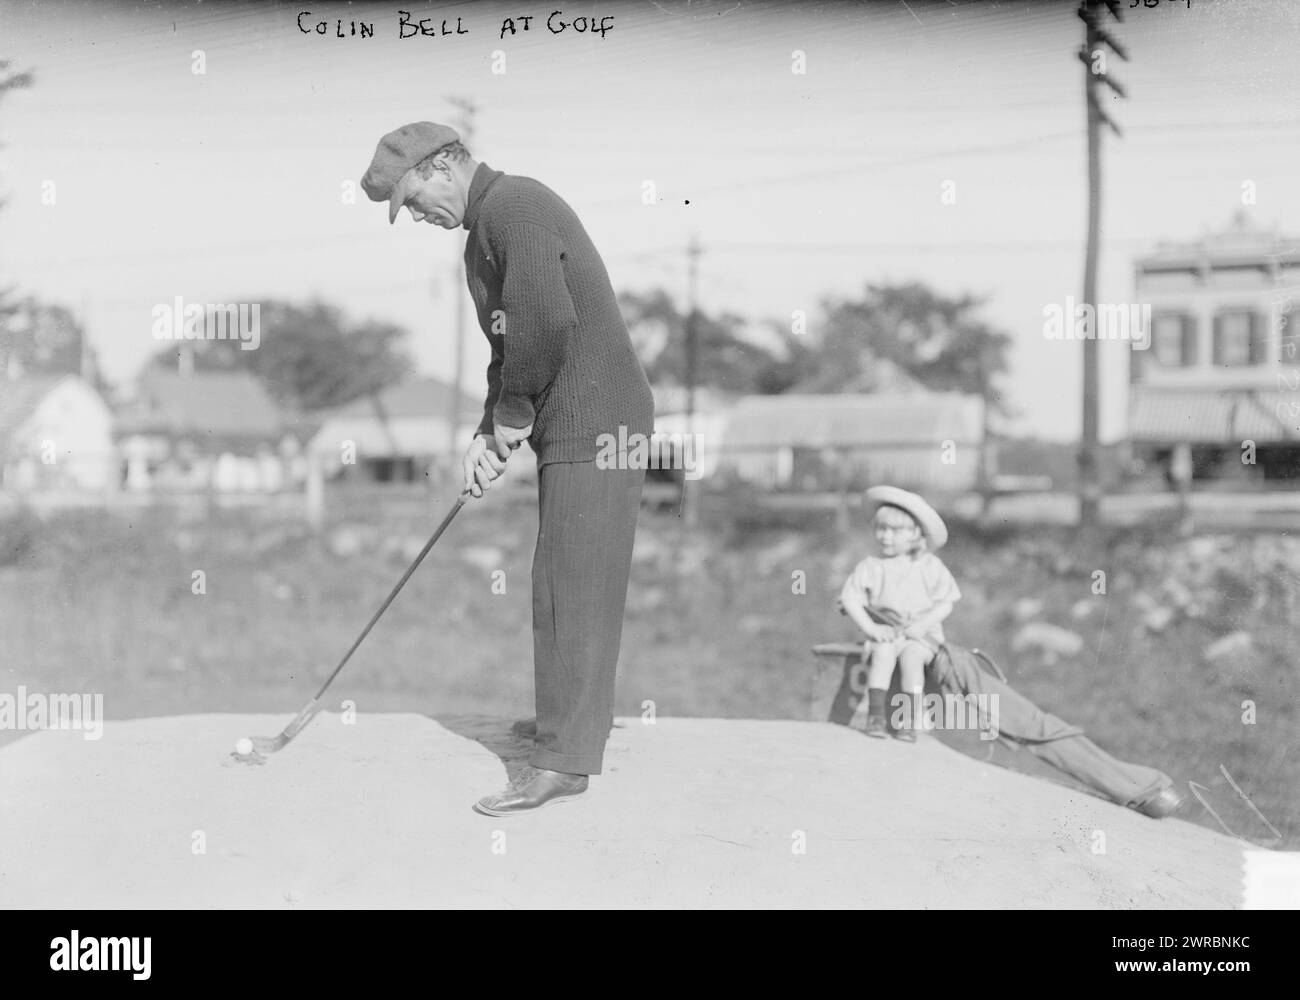 Colin Bell vom Golf, zwischen ca. 1910 und ca. 1915, Glasnegative, 1 negativ: Glas Stockfoto